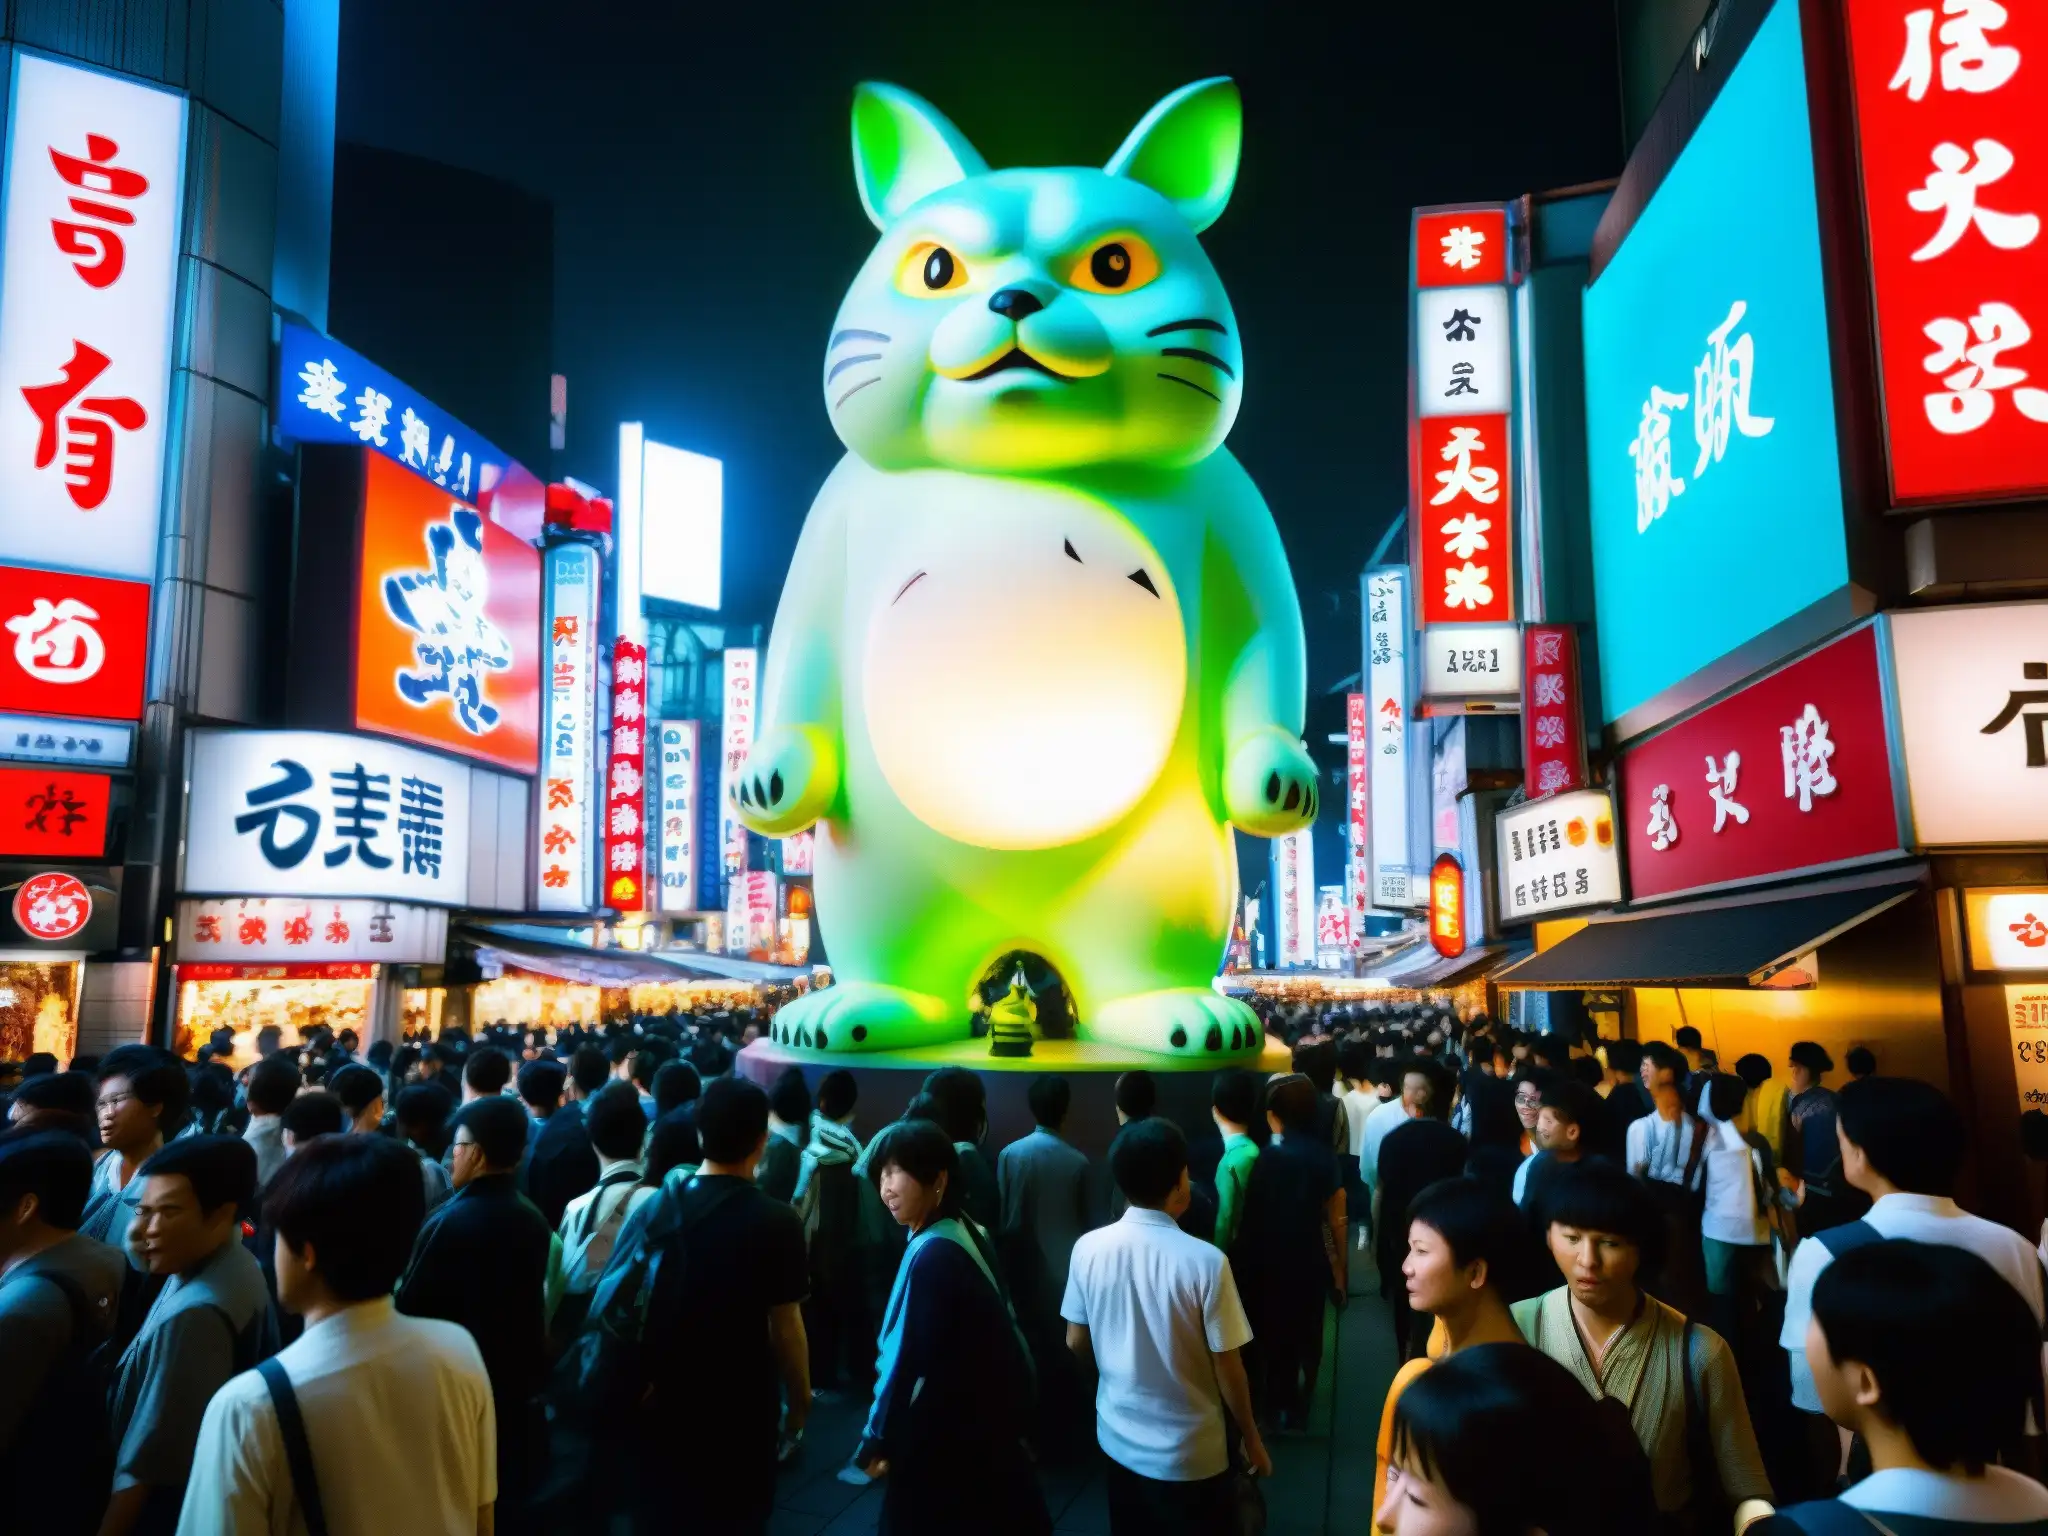 Estatua de yokai en Shibuya, rodeada de luces de neón y gente, creando una atmósfera misteriosa y cautivadora